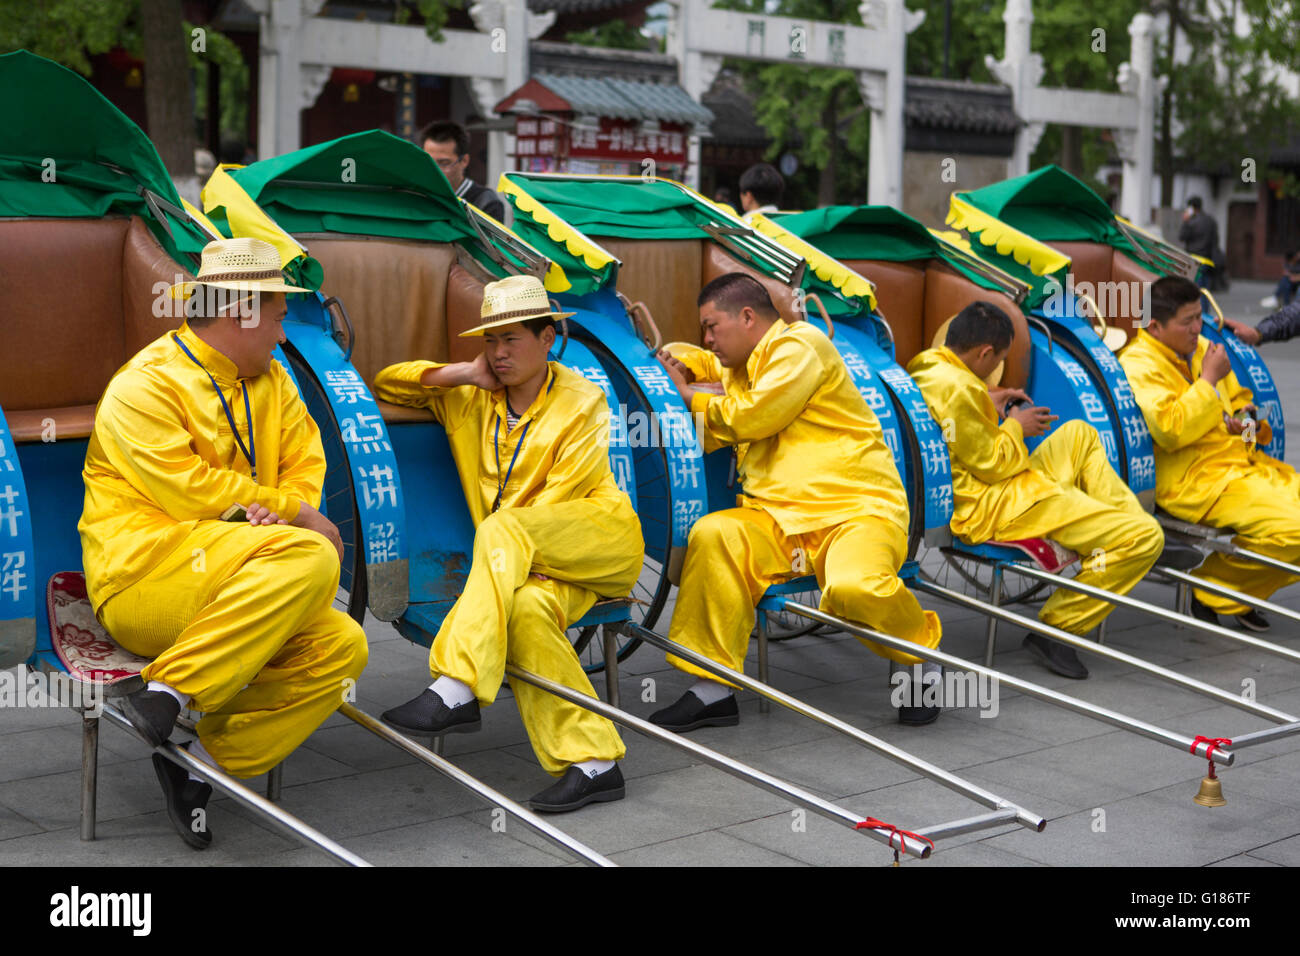 Vestido amarillo rickshaw controladores de descanso tomando un descanso de su trabajo en la ciudad de Nanjing en China Foto de stock